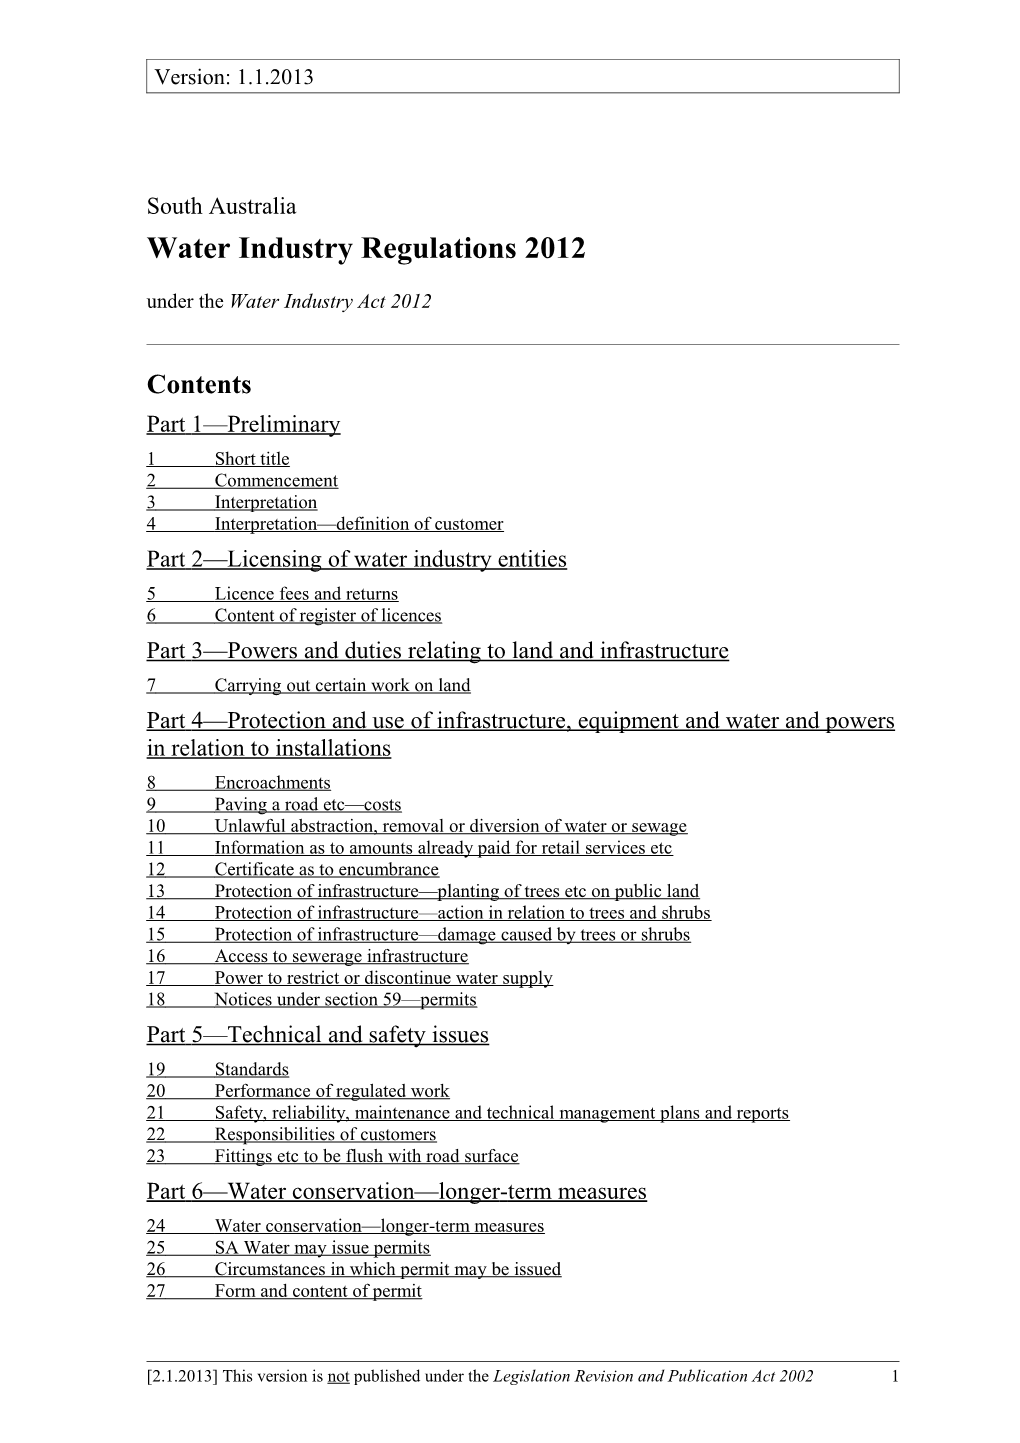 Water Industry Regulations 2012